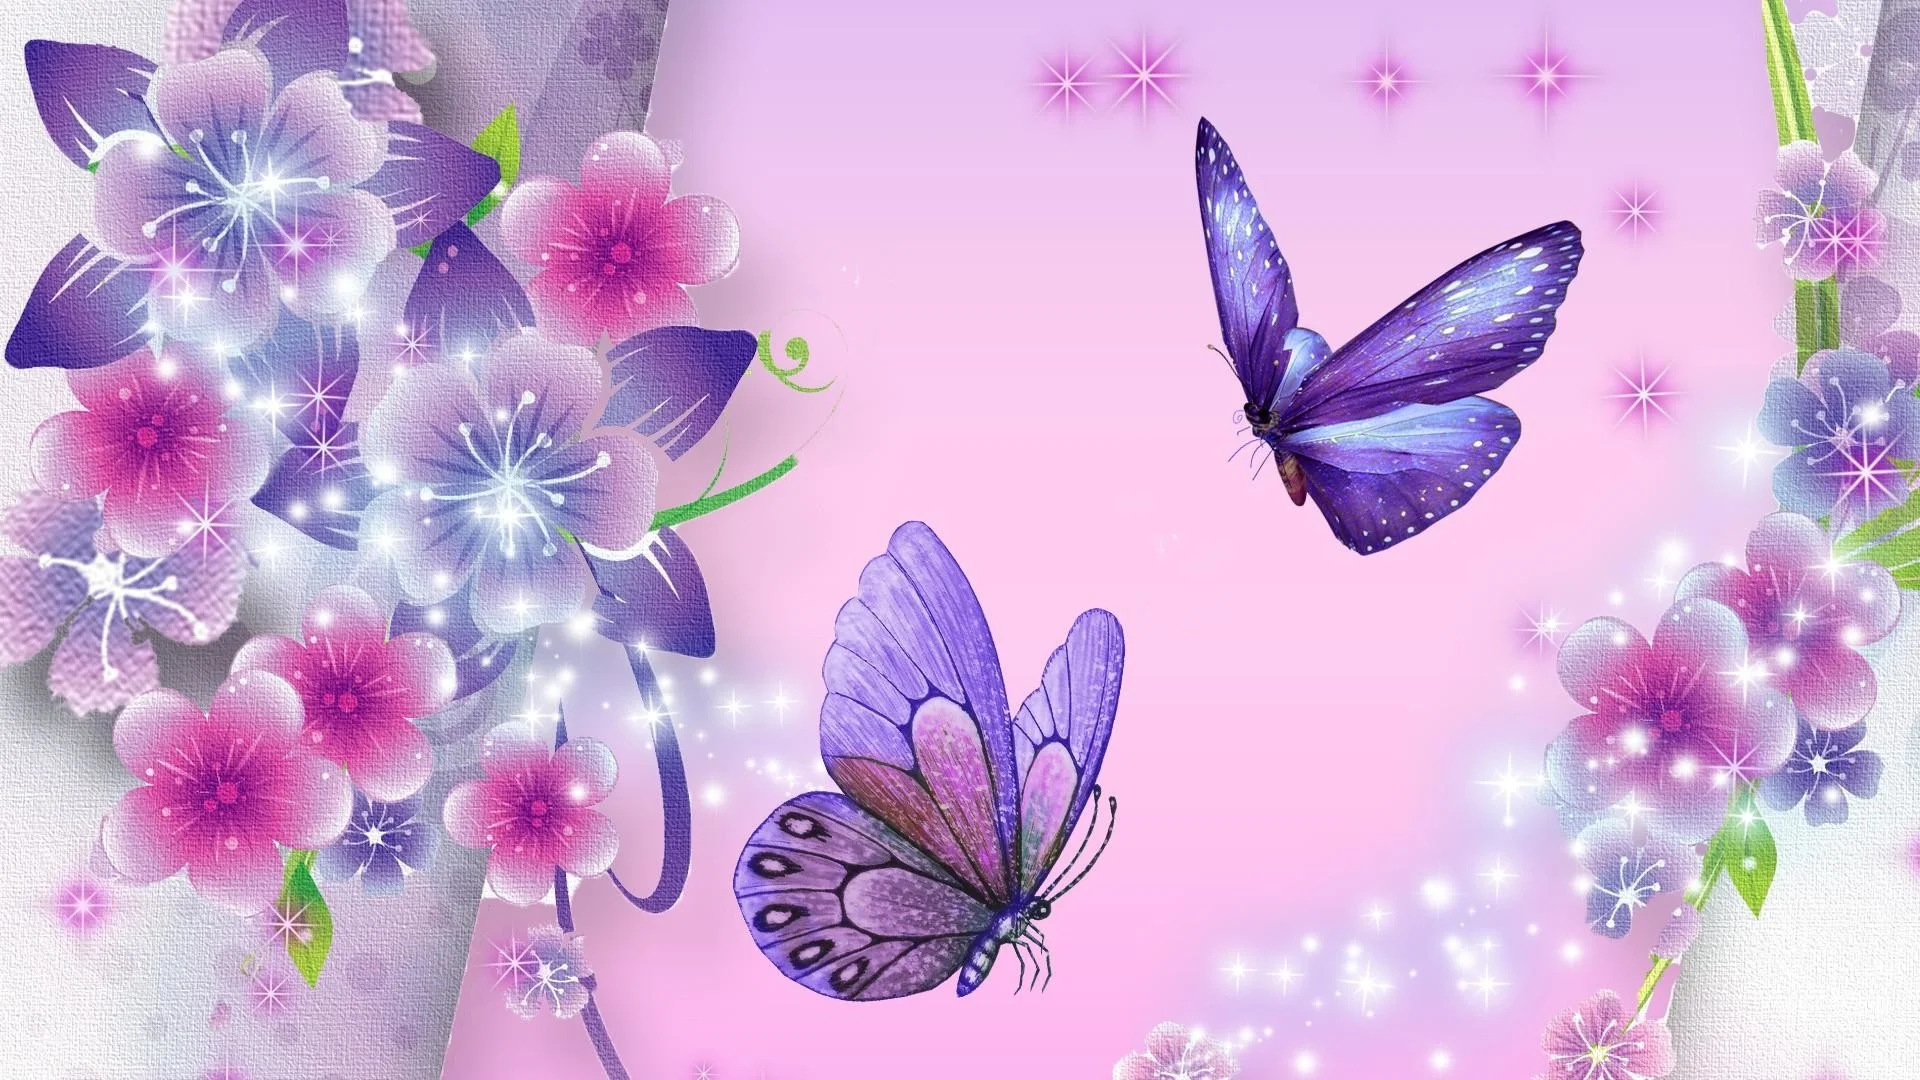 butterfly wallpaper purple star